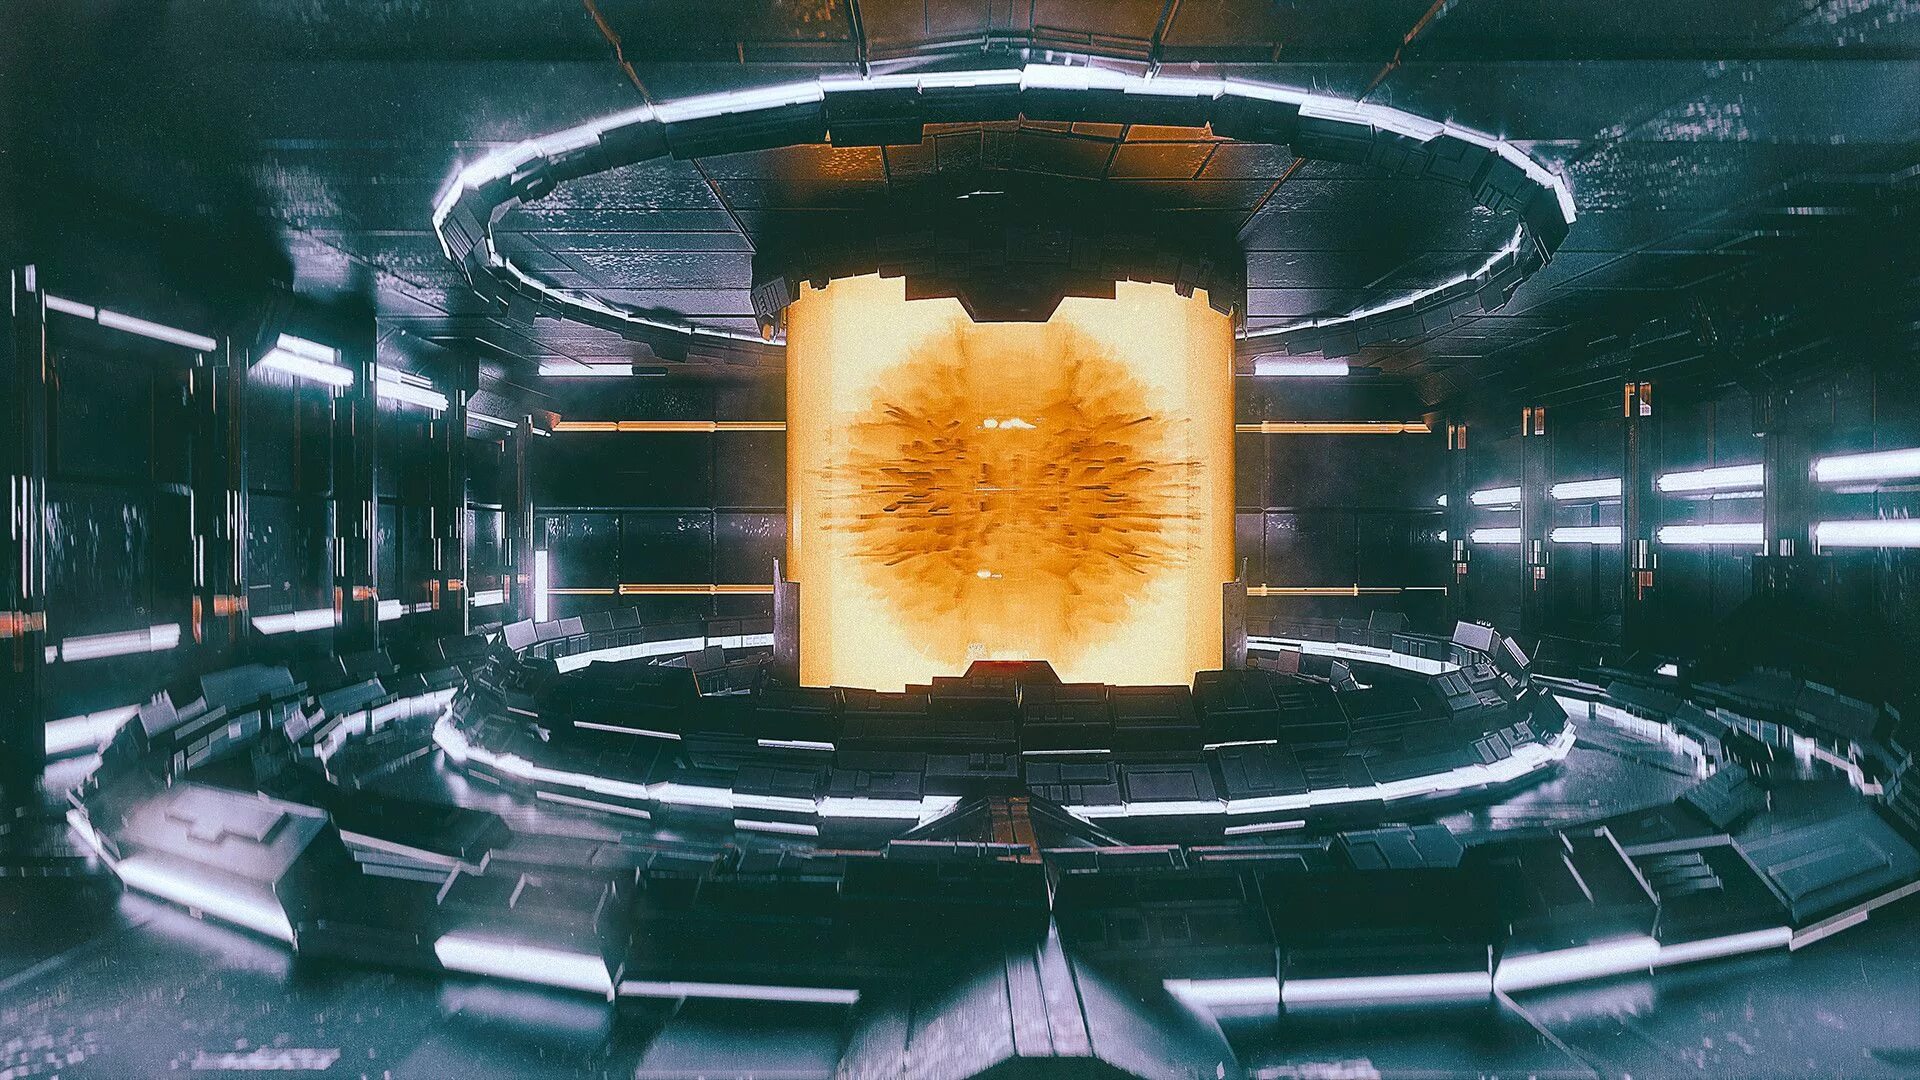 Kernel machines. Термоядерный реактор концепт арт. Реактор космического корабля scifi. Термоядерный реактор Sci Fi. Реактор космолета Sci Fi.